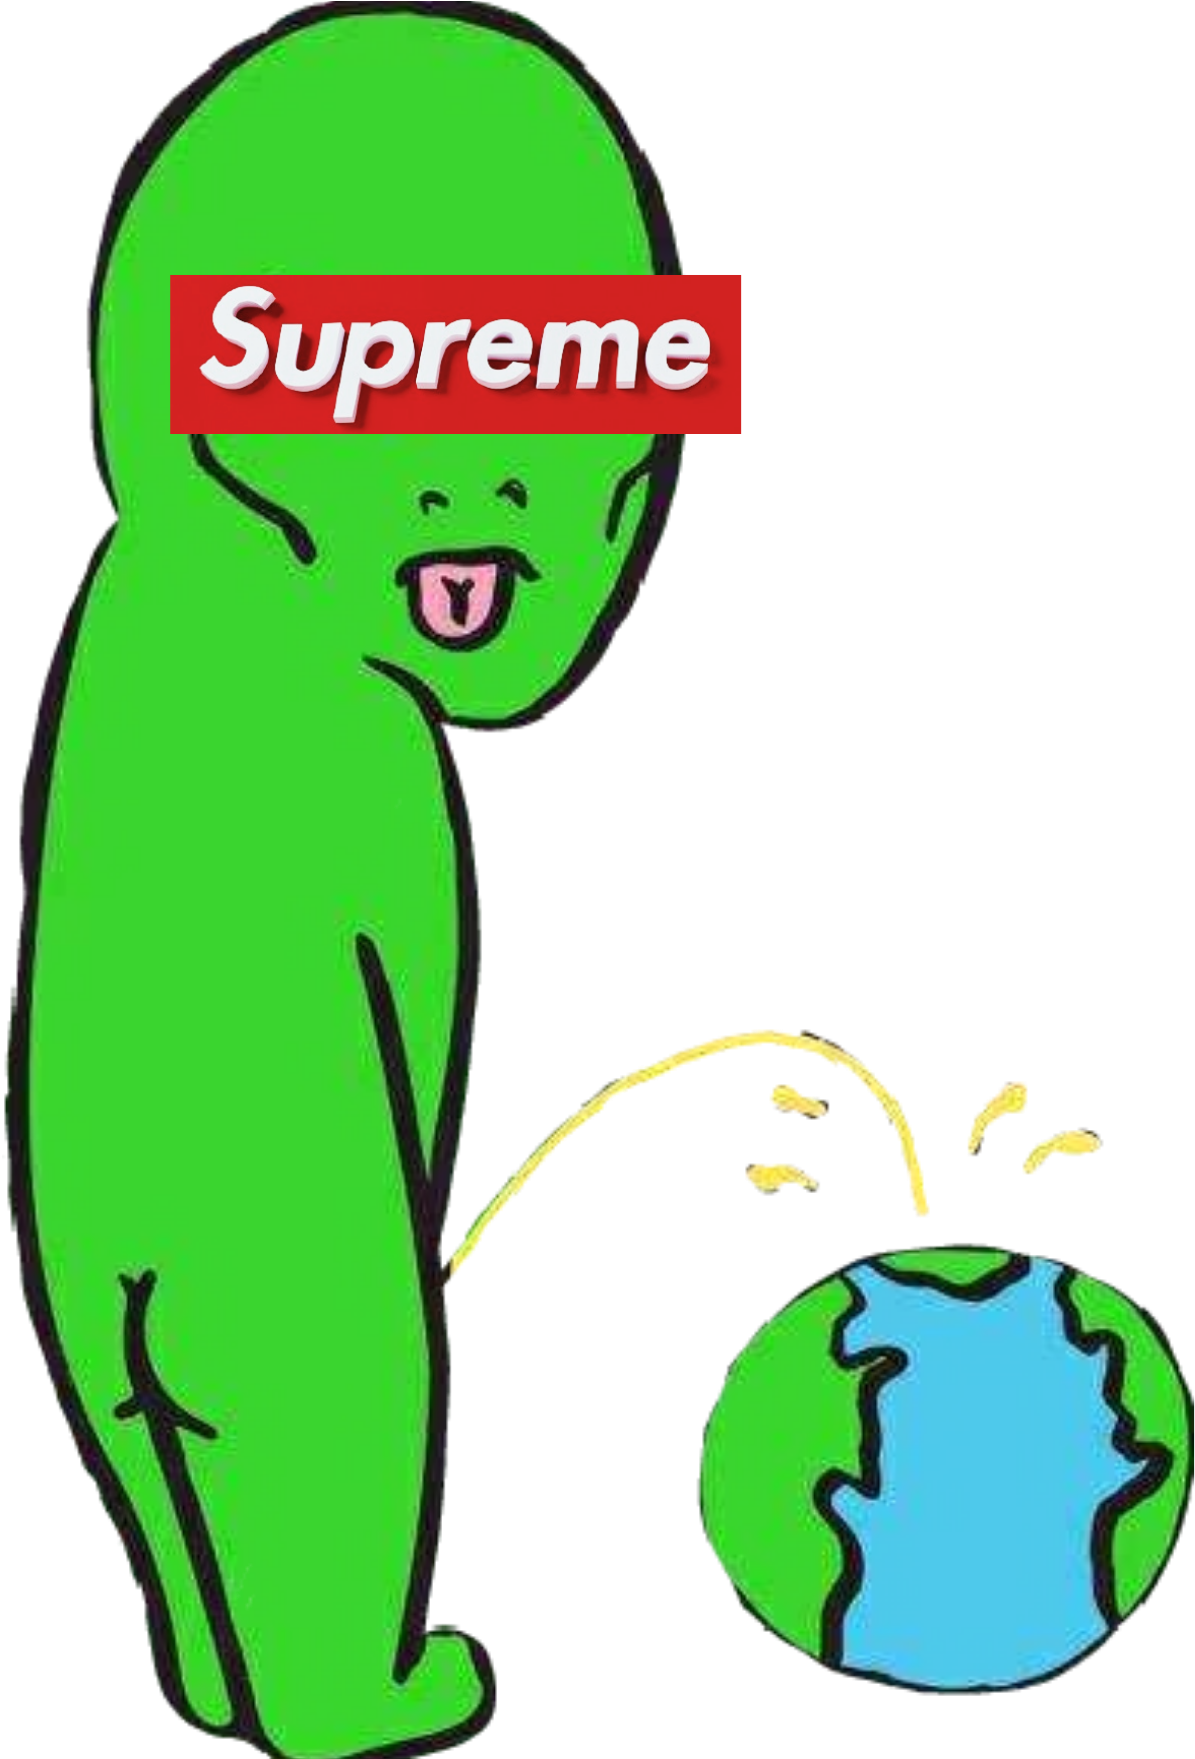 Supreme Ripndip Alien Space Earth - Supreme (1758x1758)